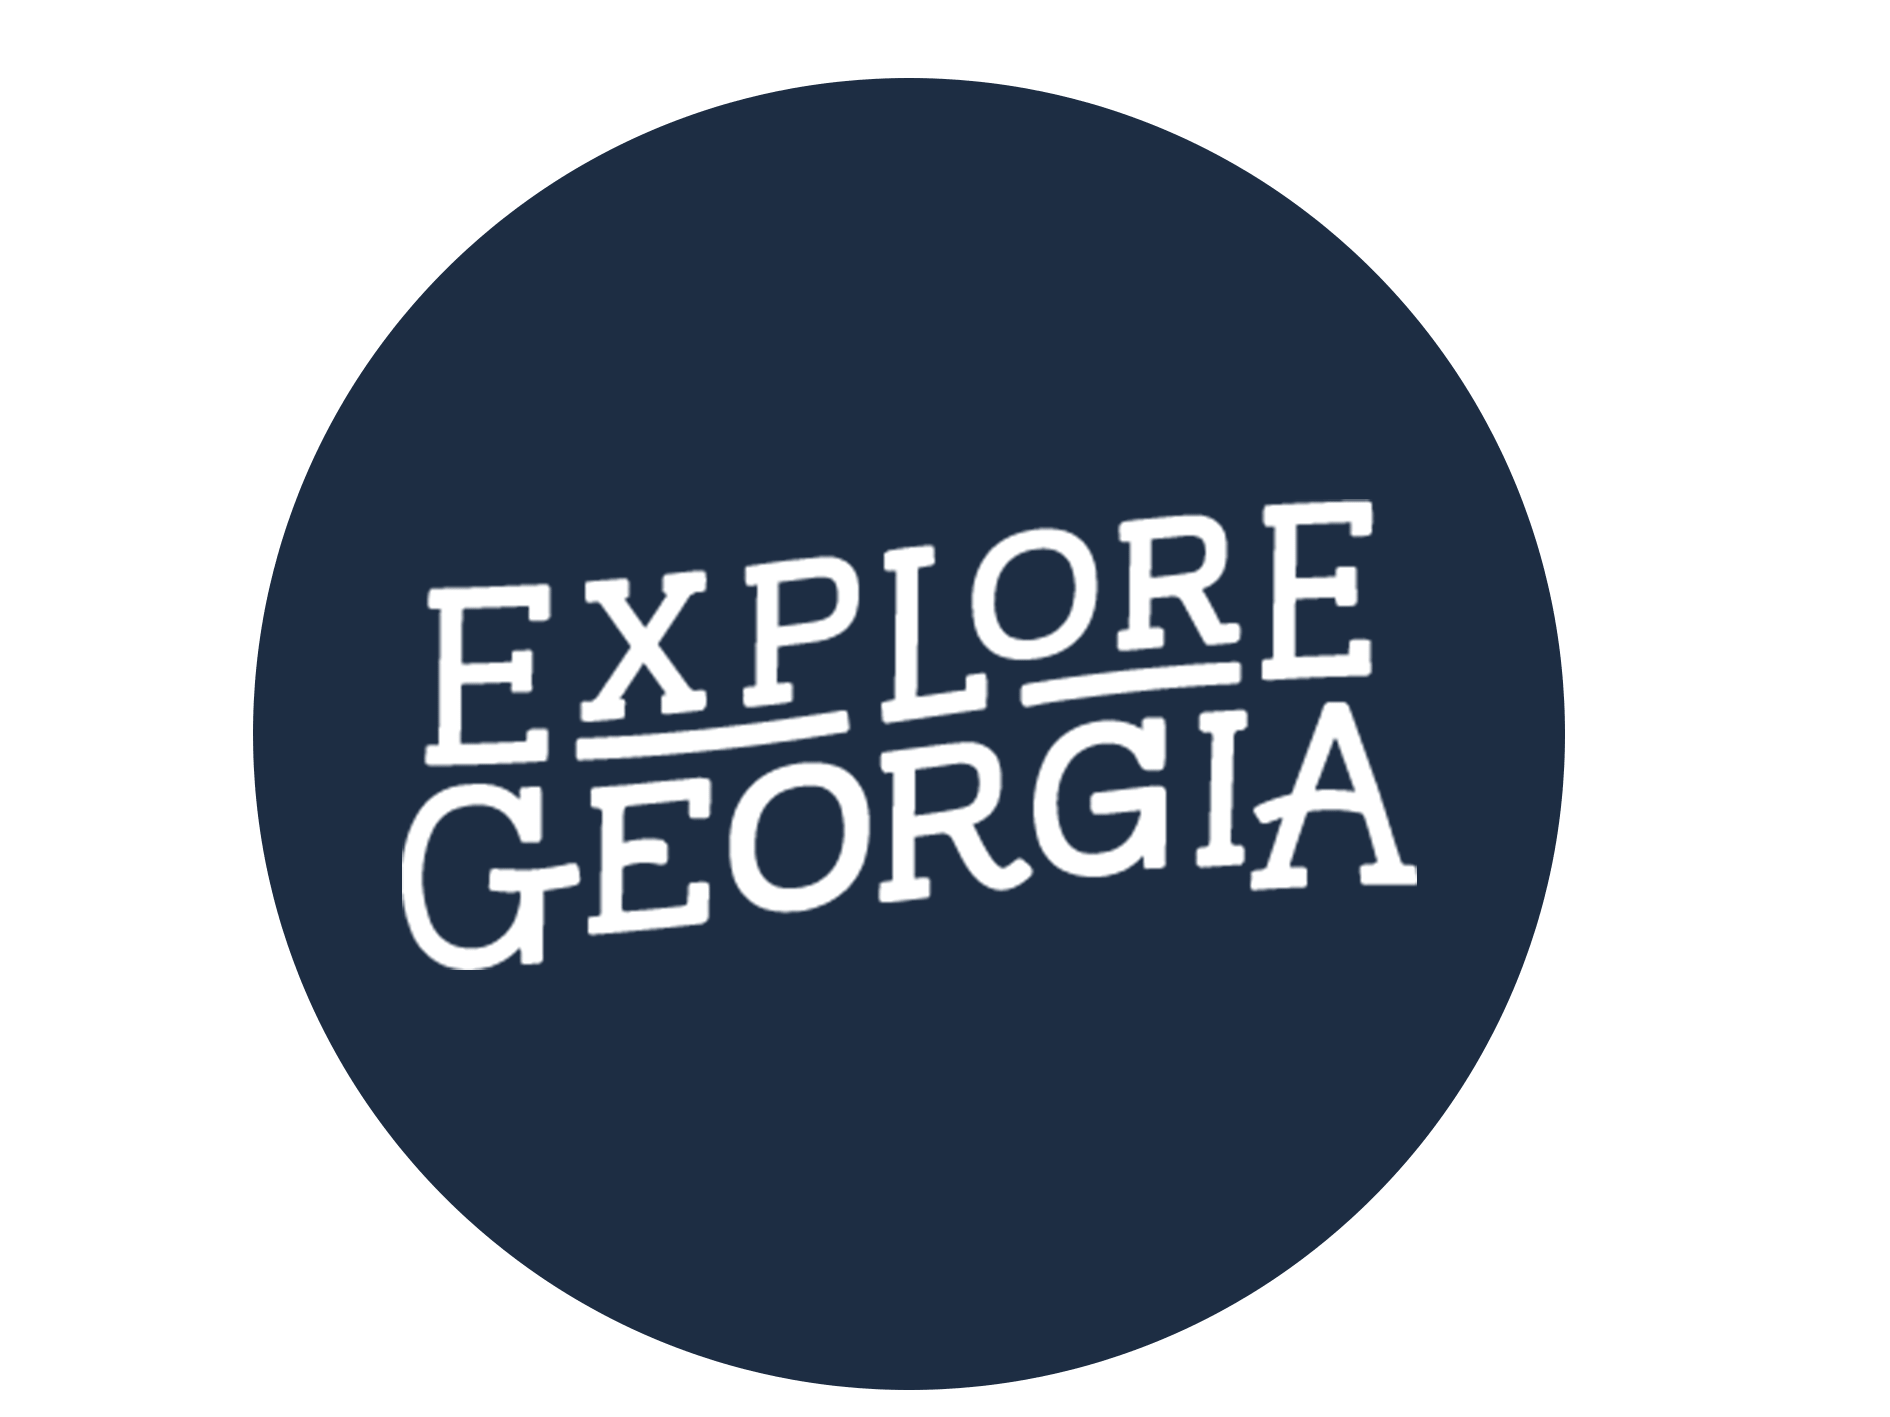 explore georgia logo for truck advertising